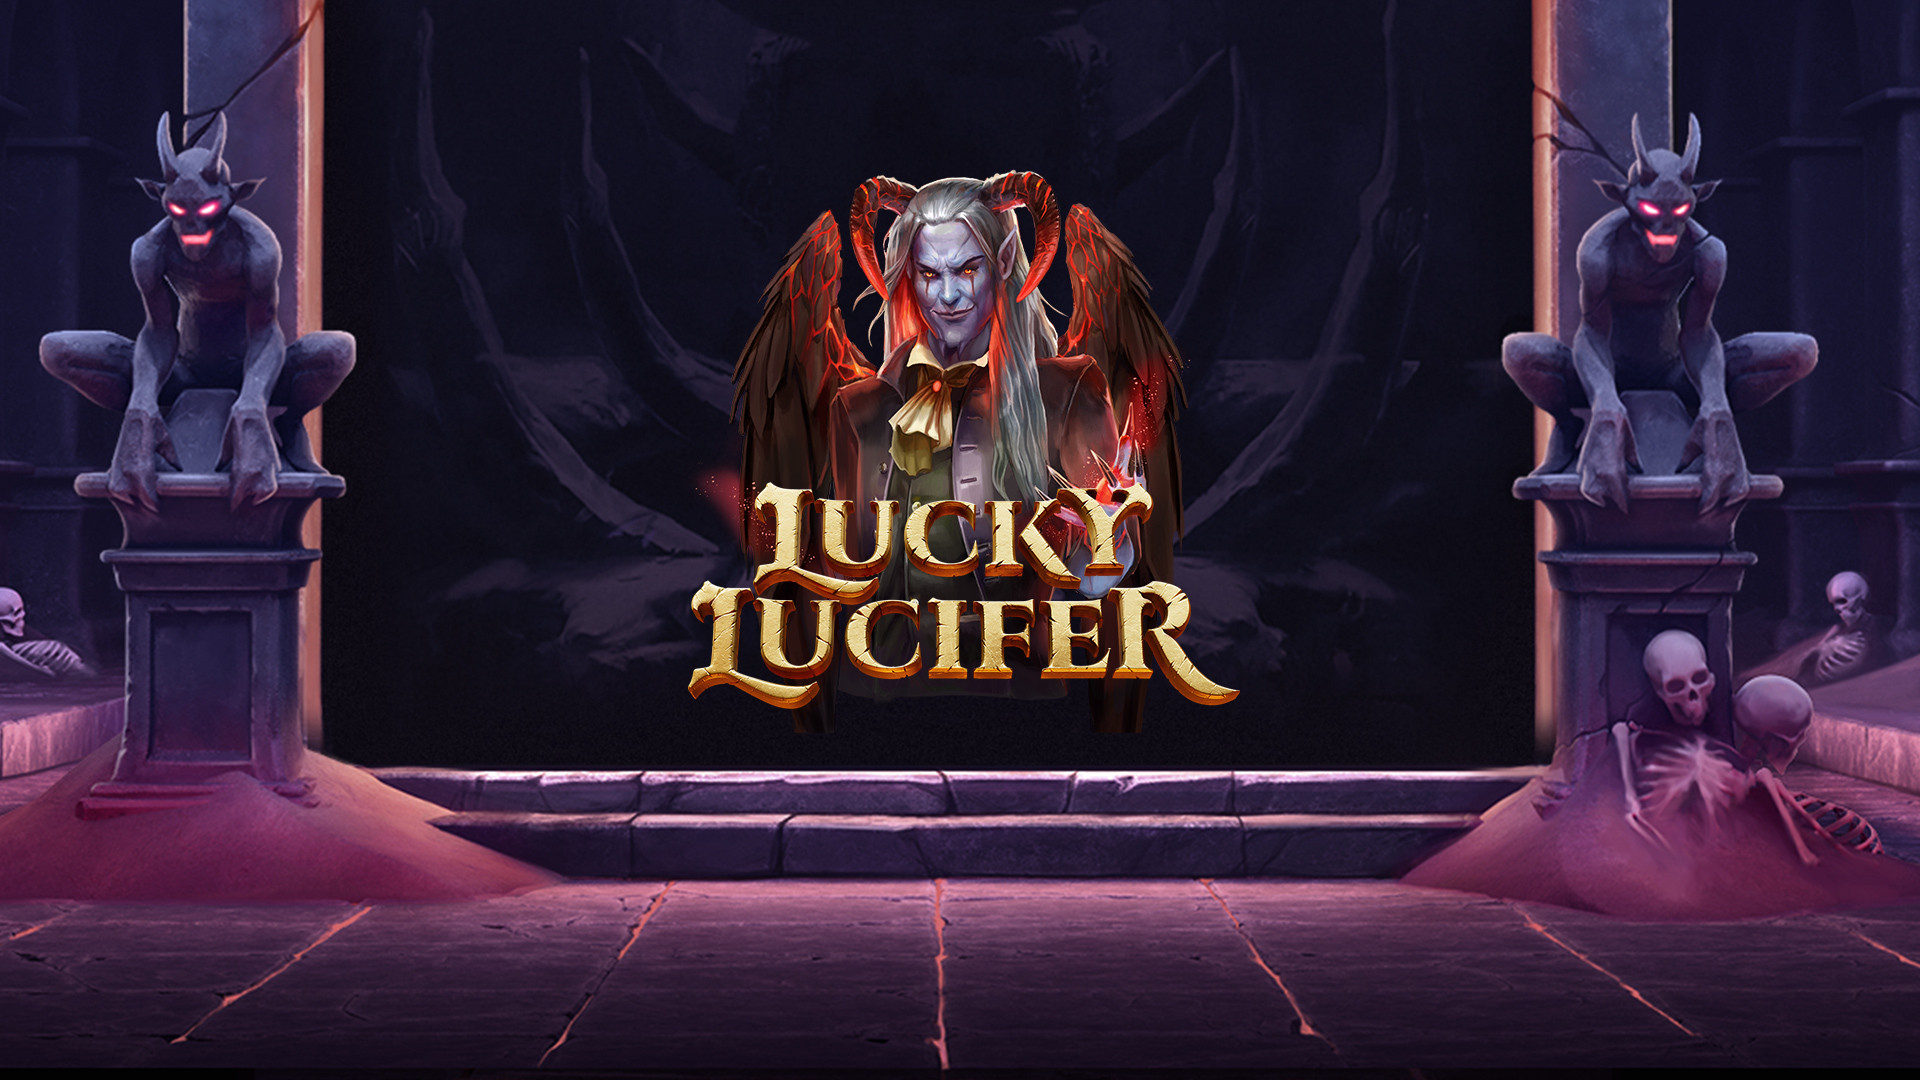 Lucky Lucifer